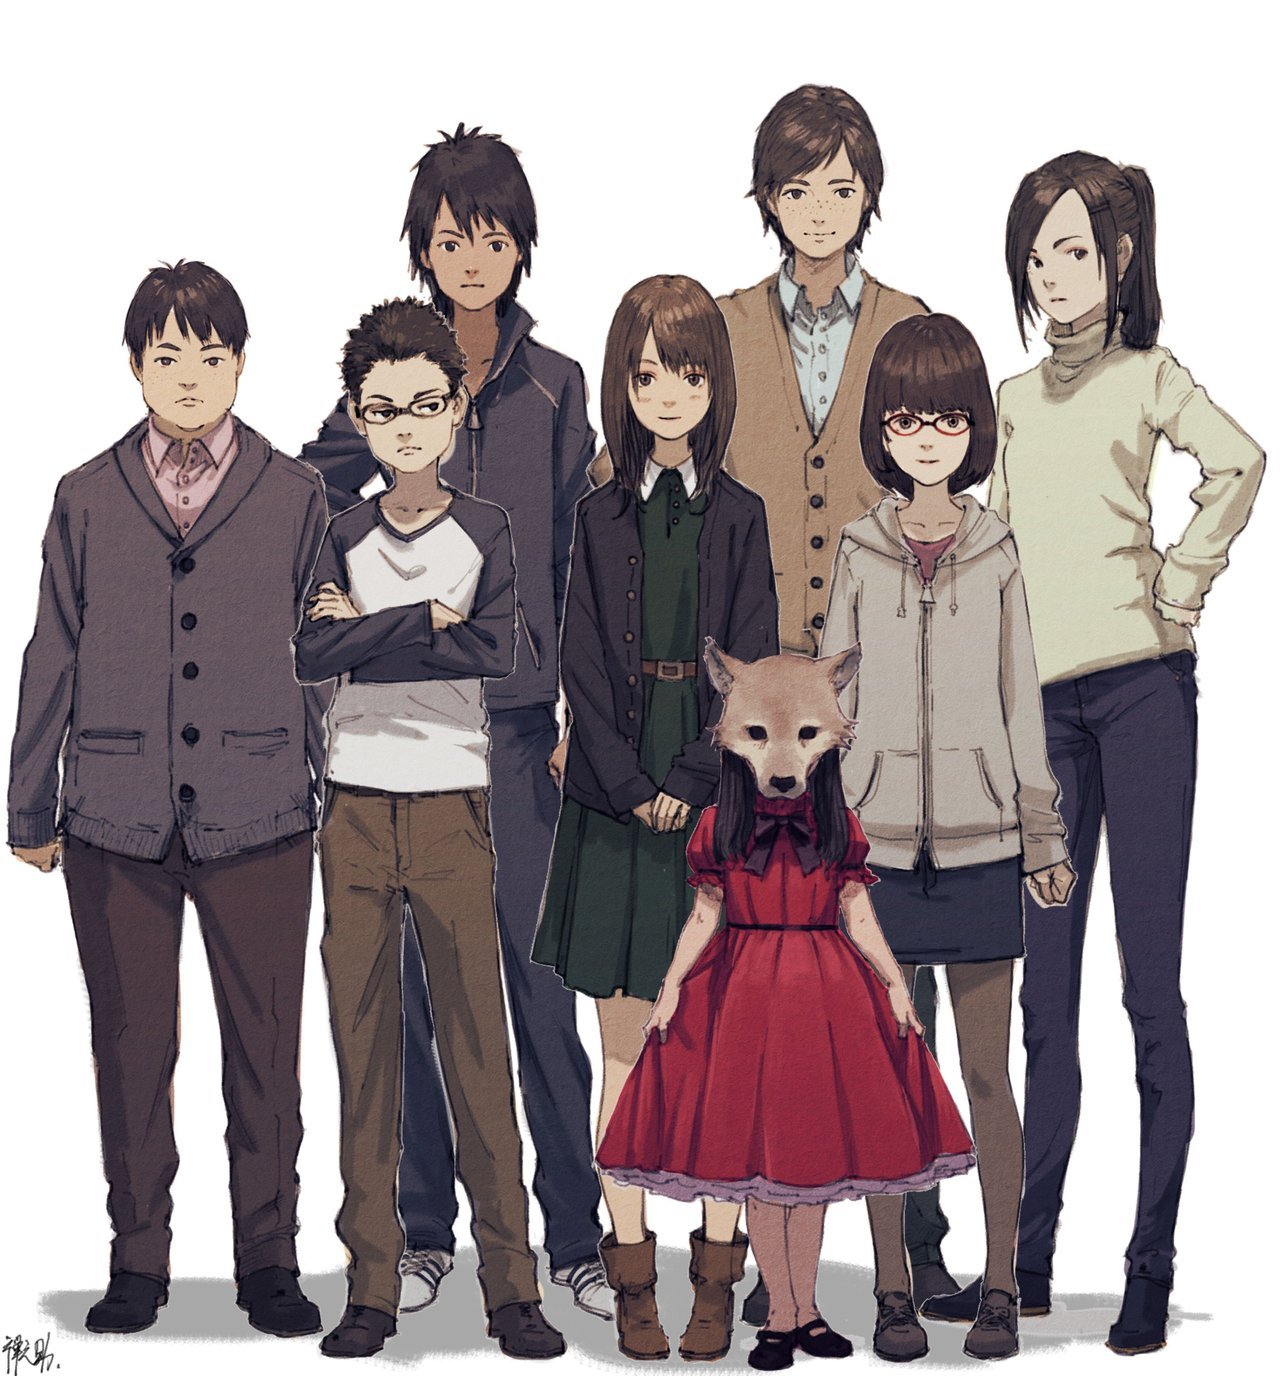 Anime chuyển thể từ Light Novel Kagami no Kojou lên kế hoạch phát hành